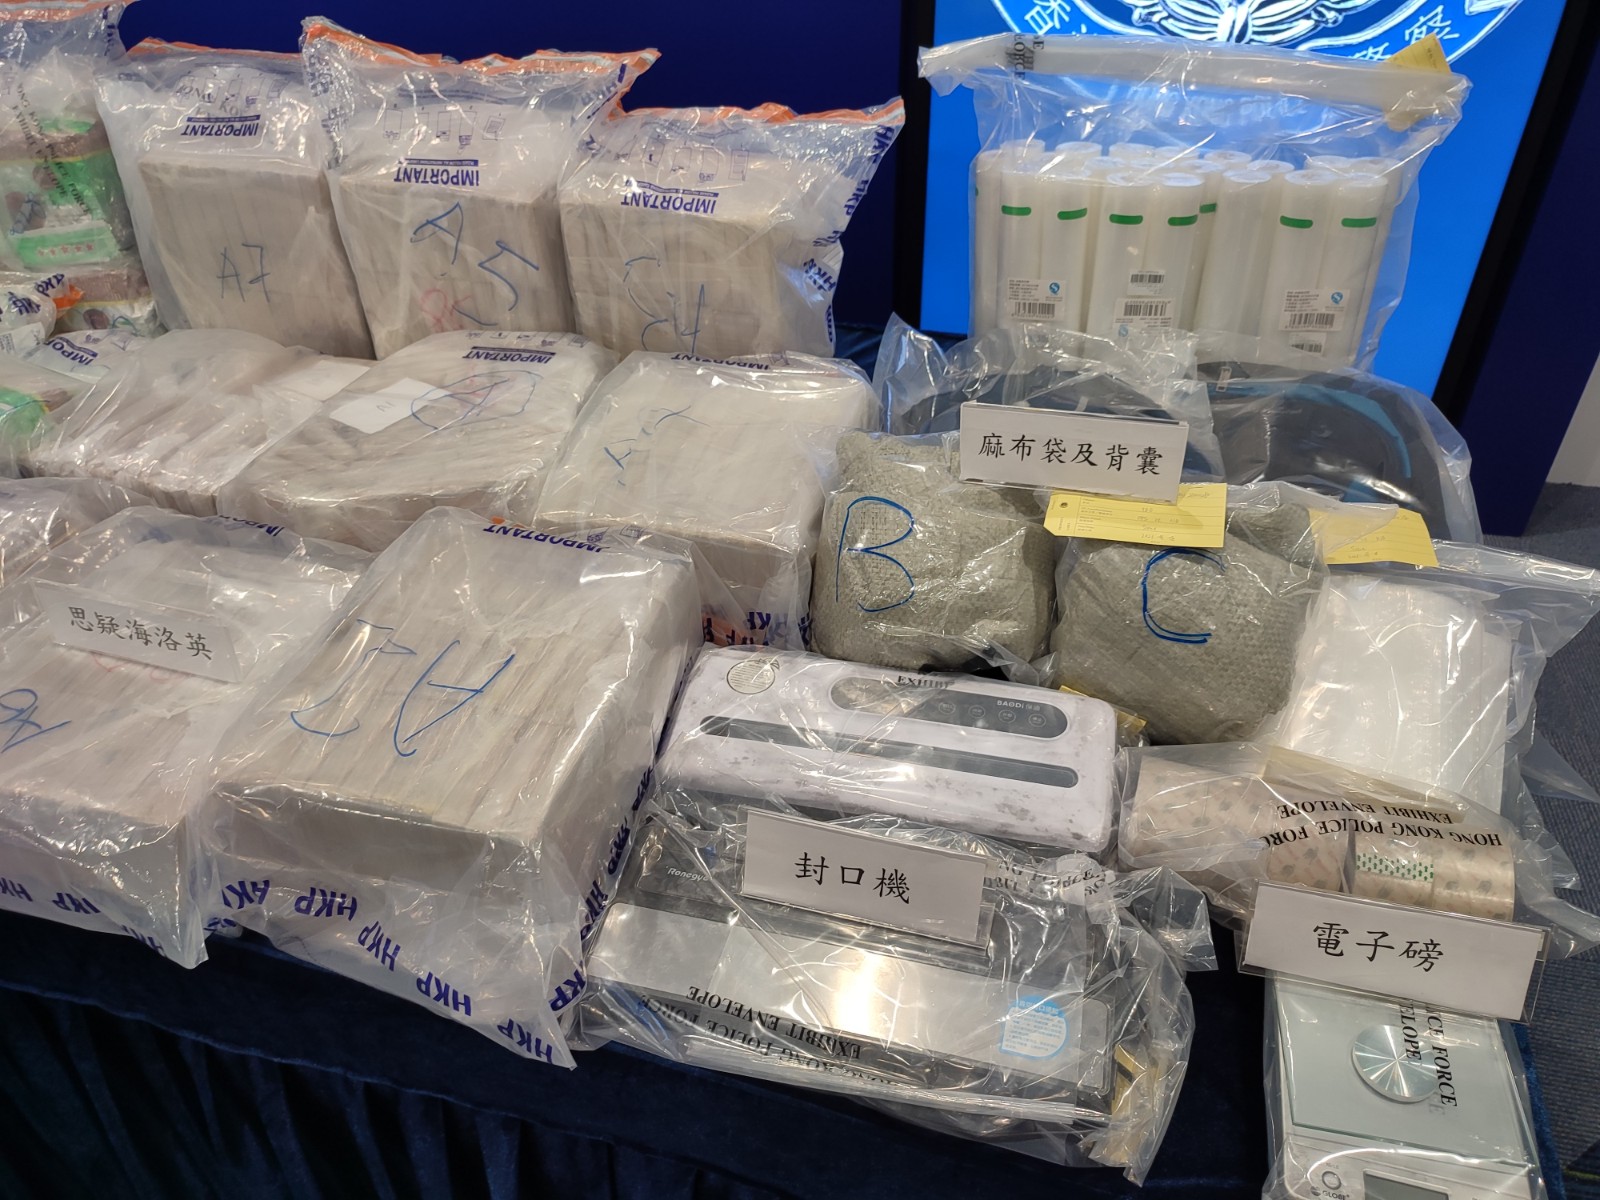 警方搗破長沙灣毒品倉庫 檢值1.95億元冰毒及海洛英